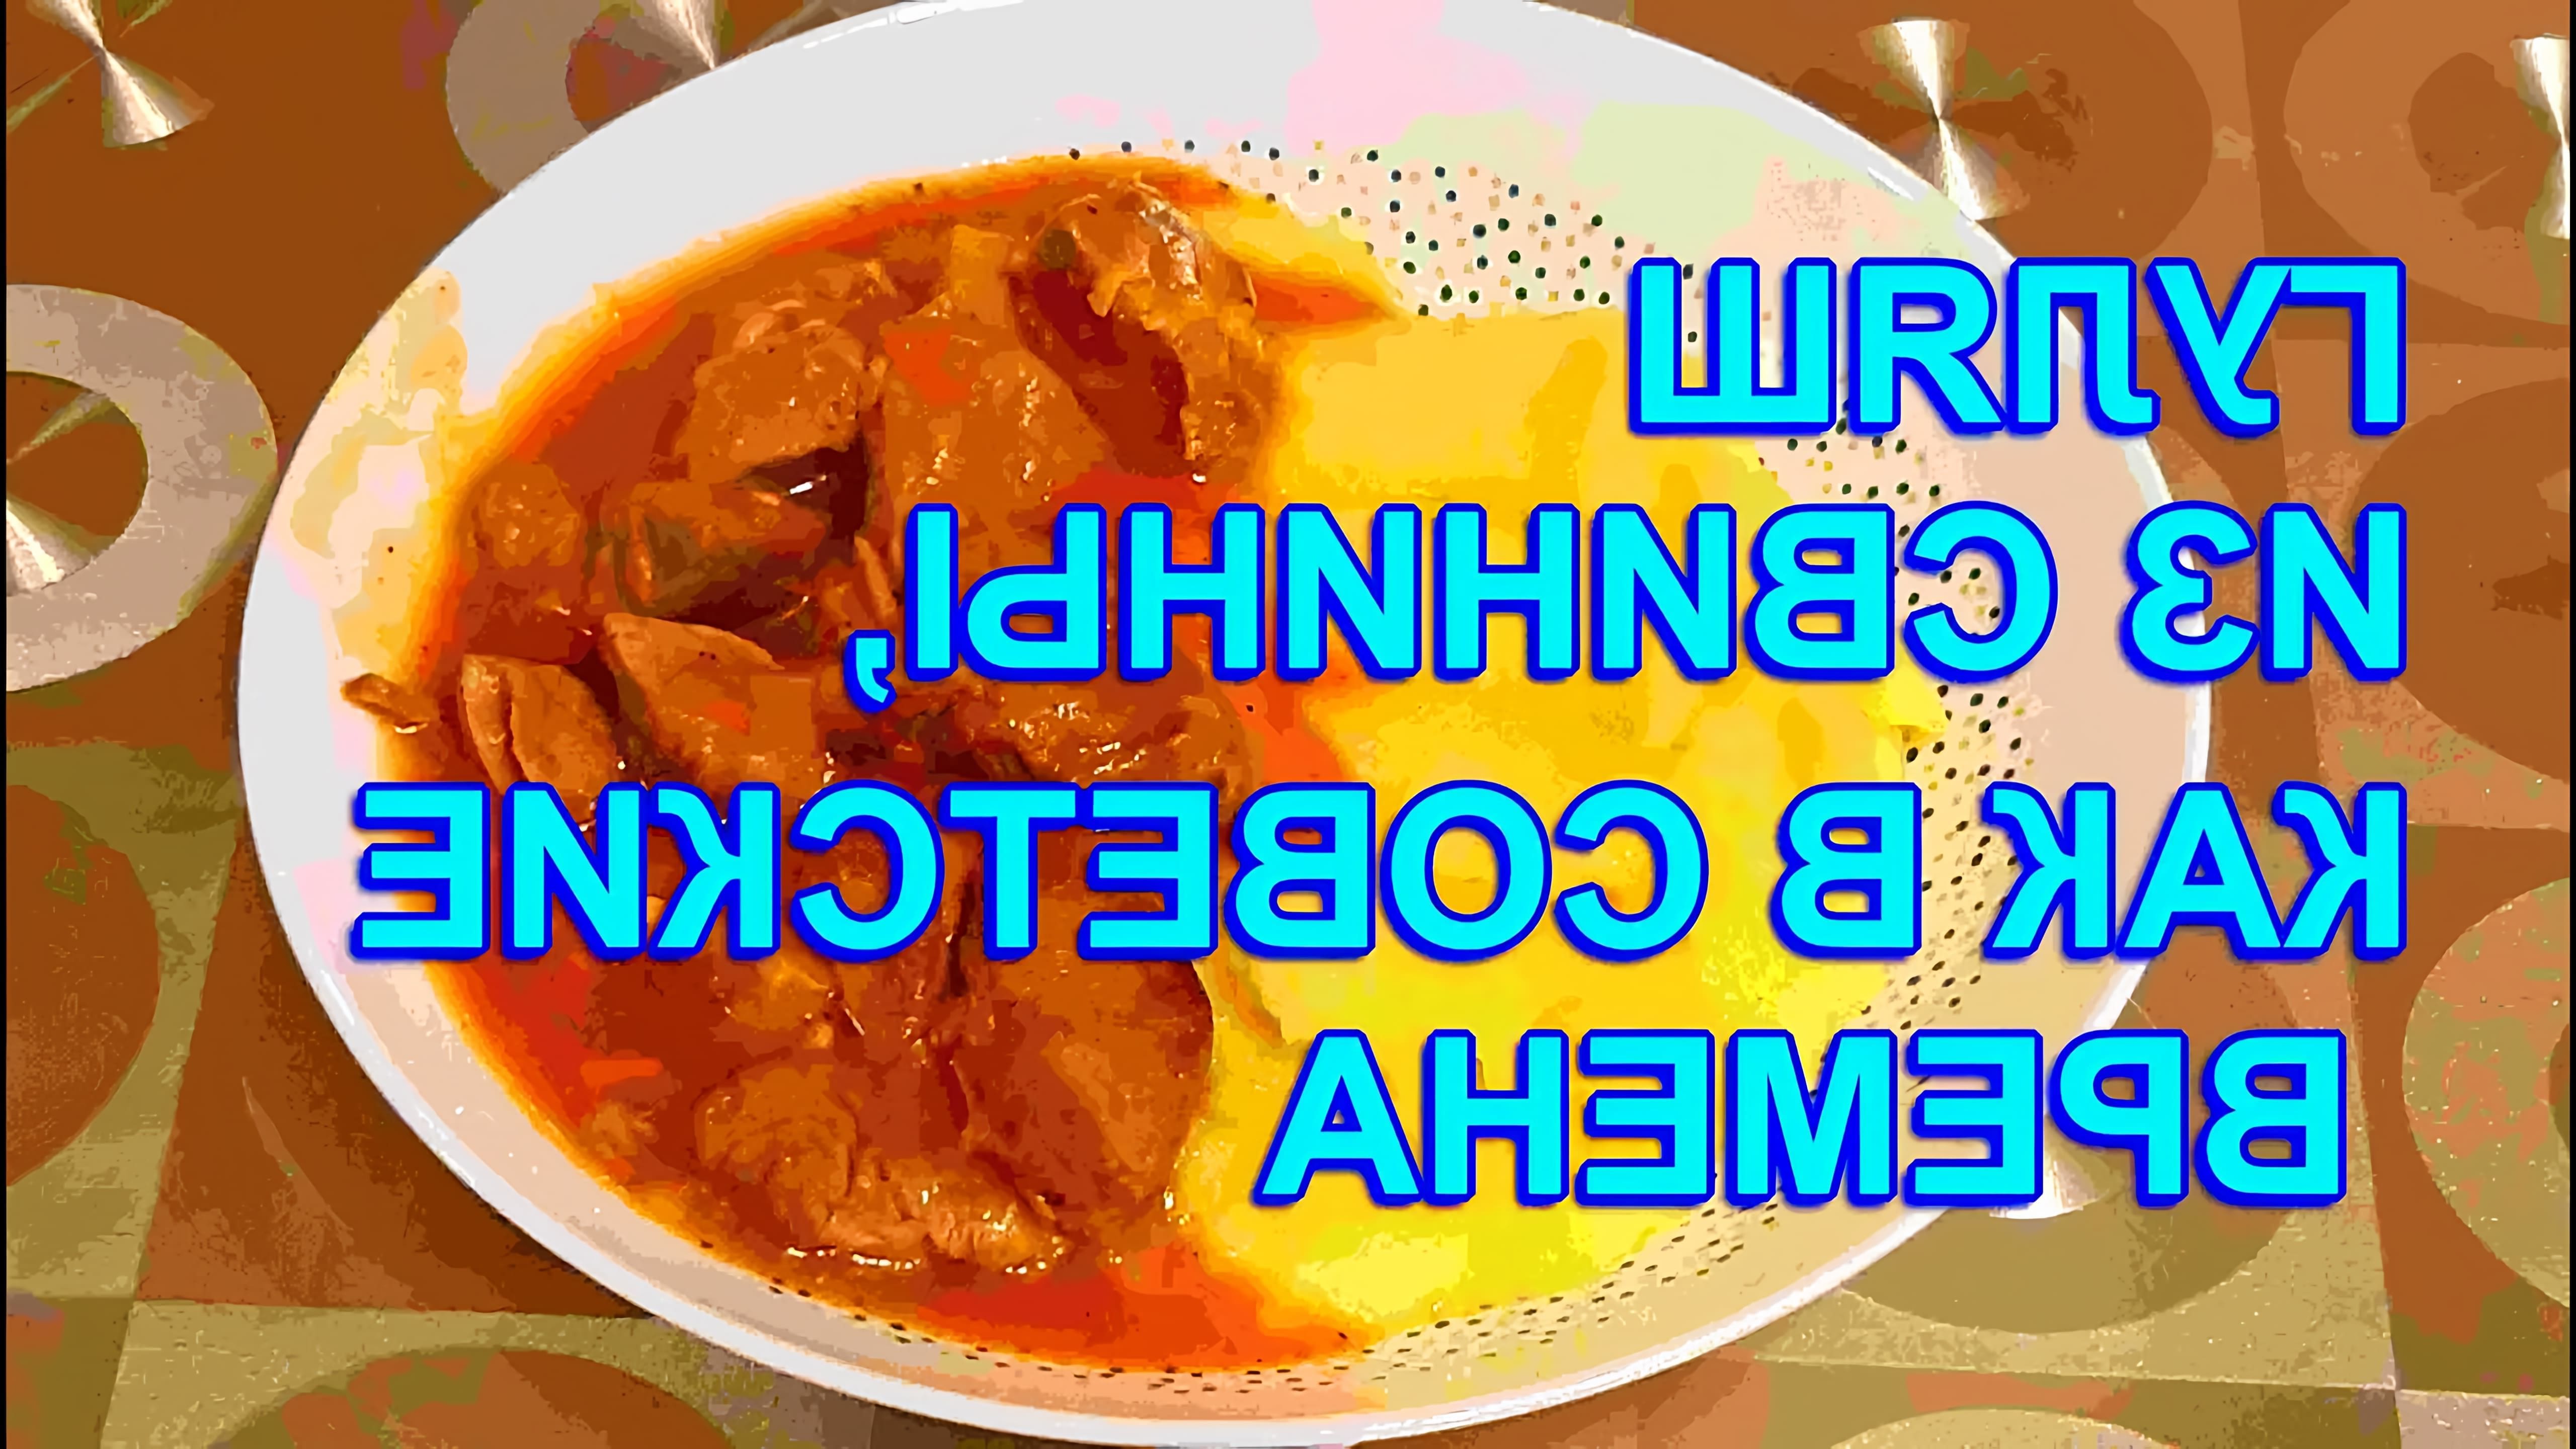 В этом видео демонстрируется процесс приготовления гуляша из свинины по рецепту, напоминающему блюда из советских времен